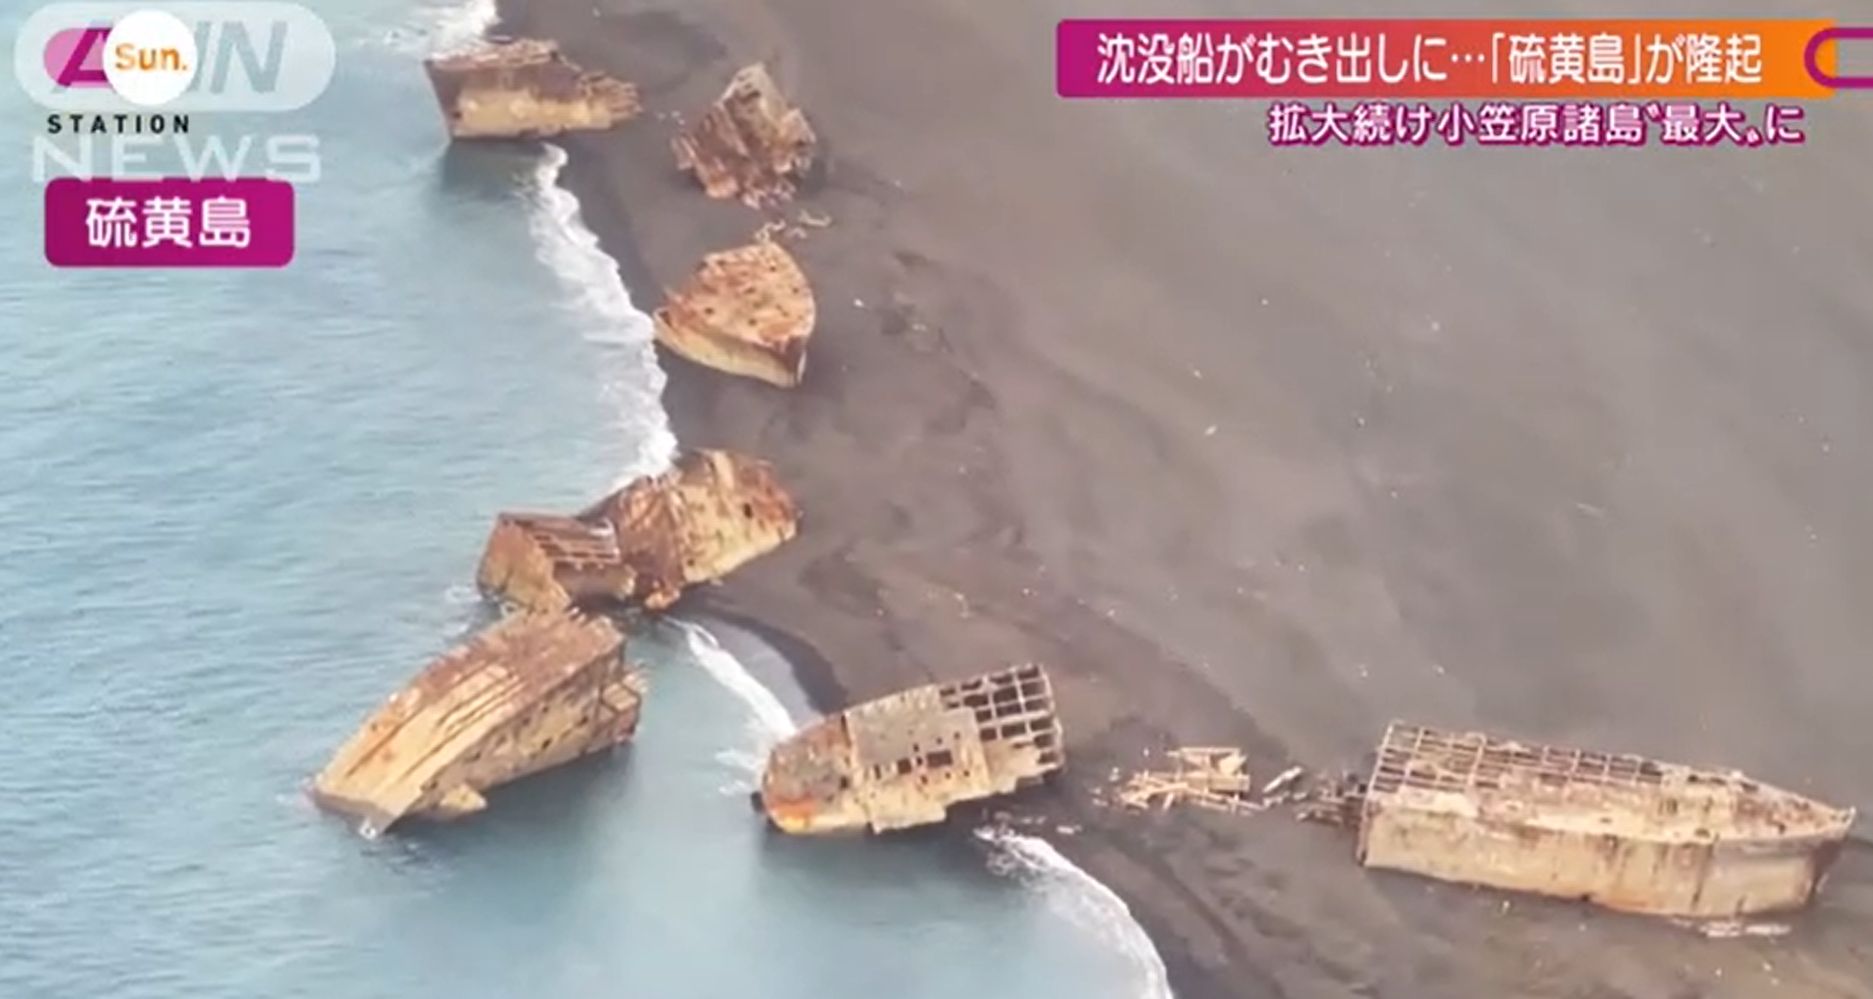 II. világháborús hajóroncsokat hozott a felszínre egy vulkánkitörés Japánban